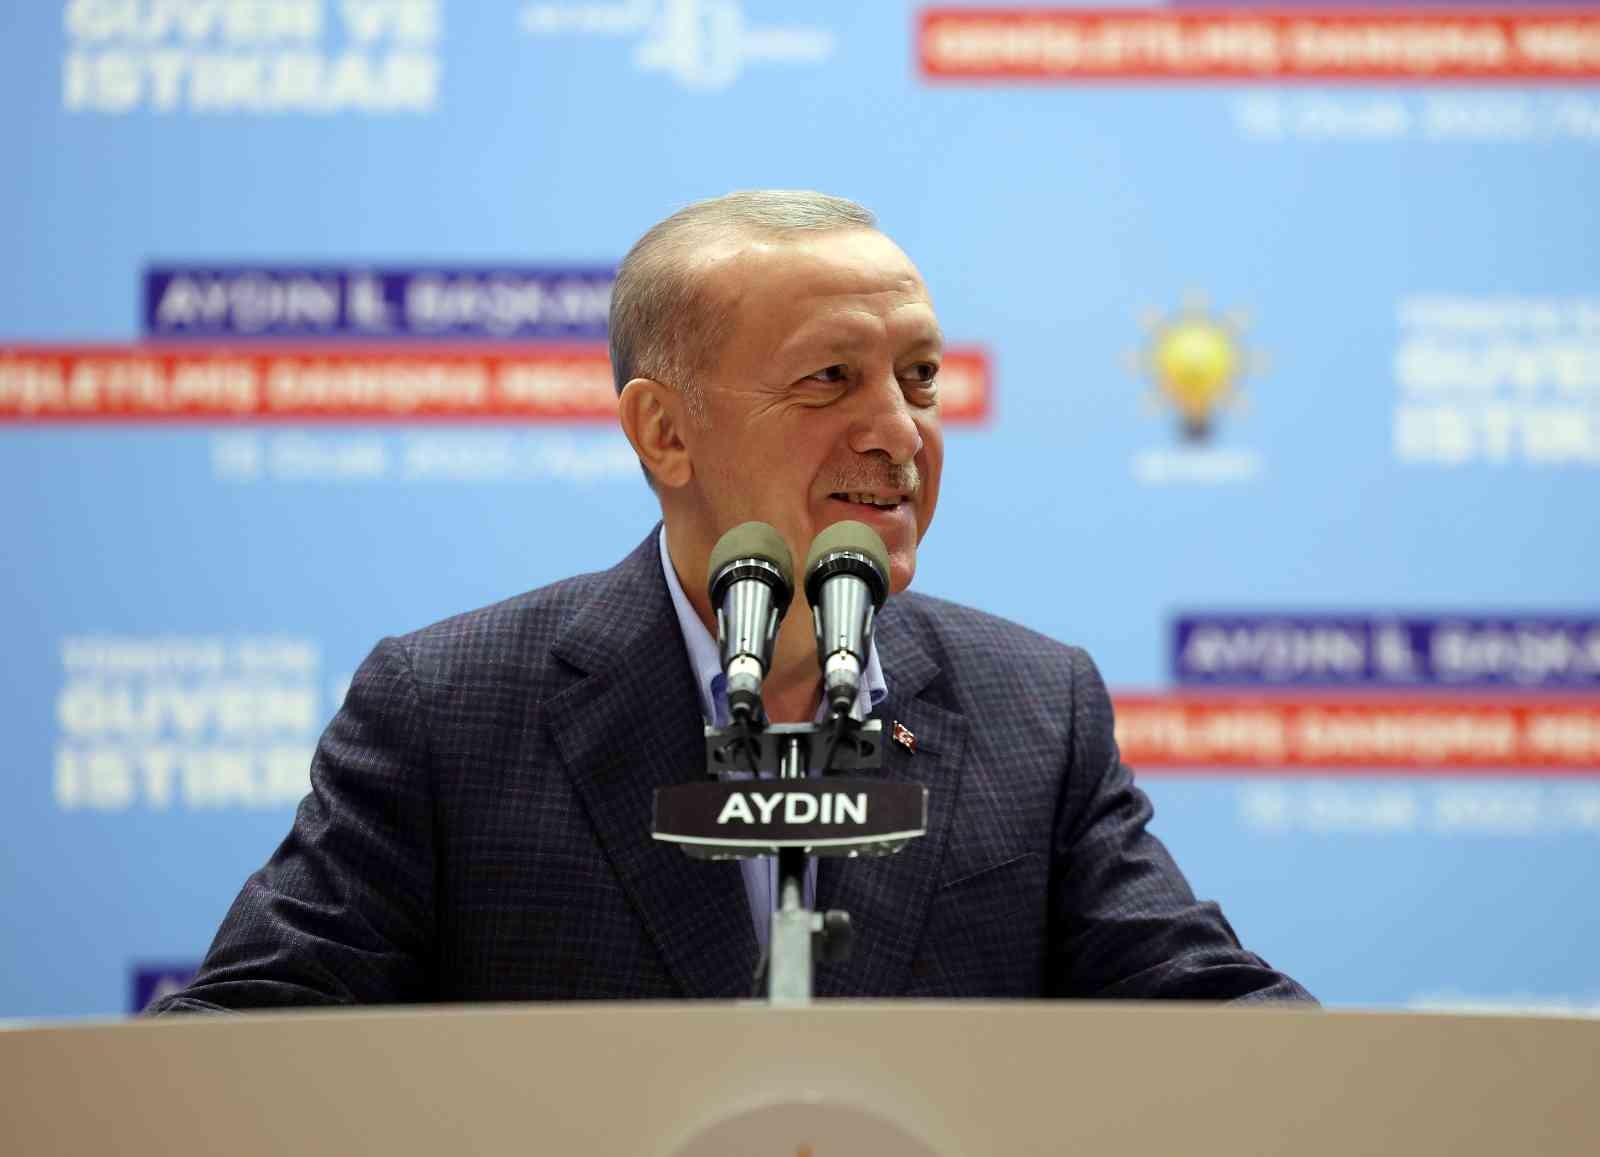 Cumhurbaşkanı Erdoğan: “Dünya değişti, CHP’nin siyaset tarzı değişmedi”